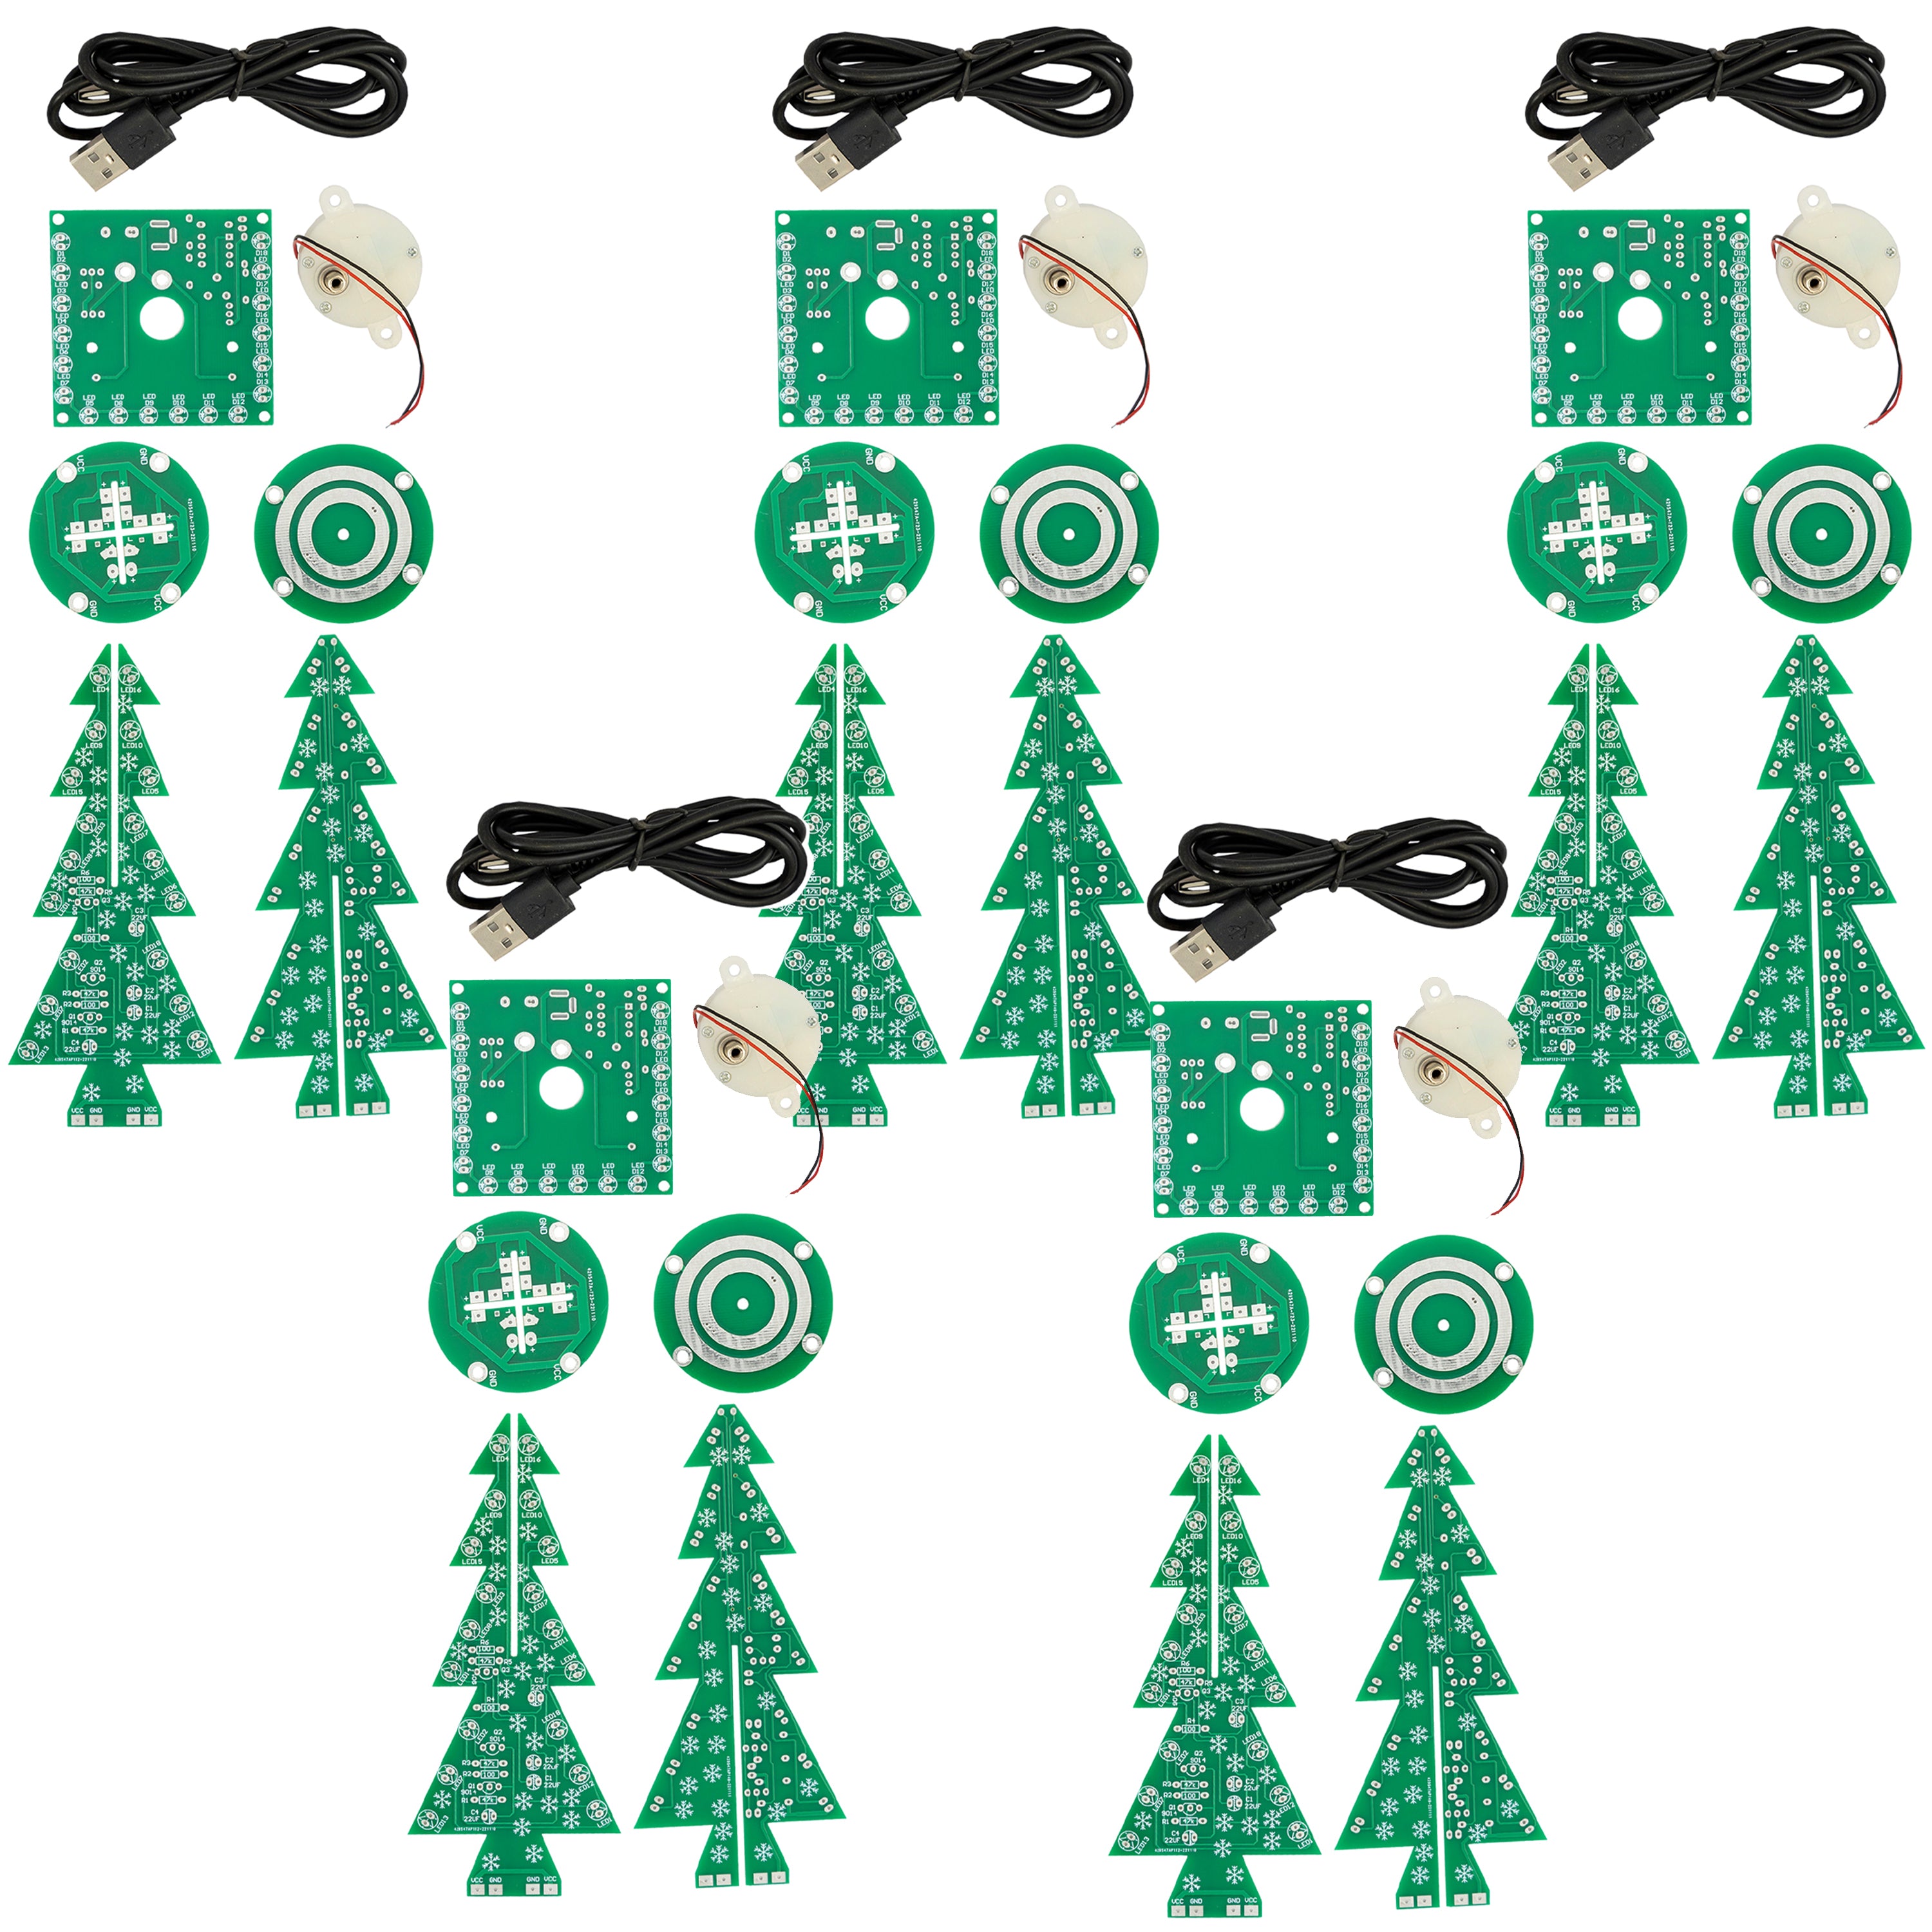 Kit per albero di Natale a LED fai da te: kit elettronico per albero di Natale da saldare - kit di saldatura per un albero di Natale rotante con LED e connessione USB